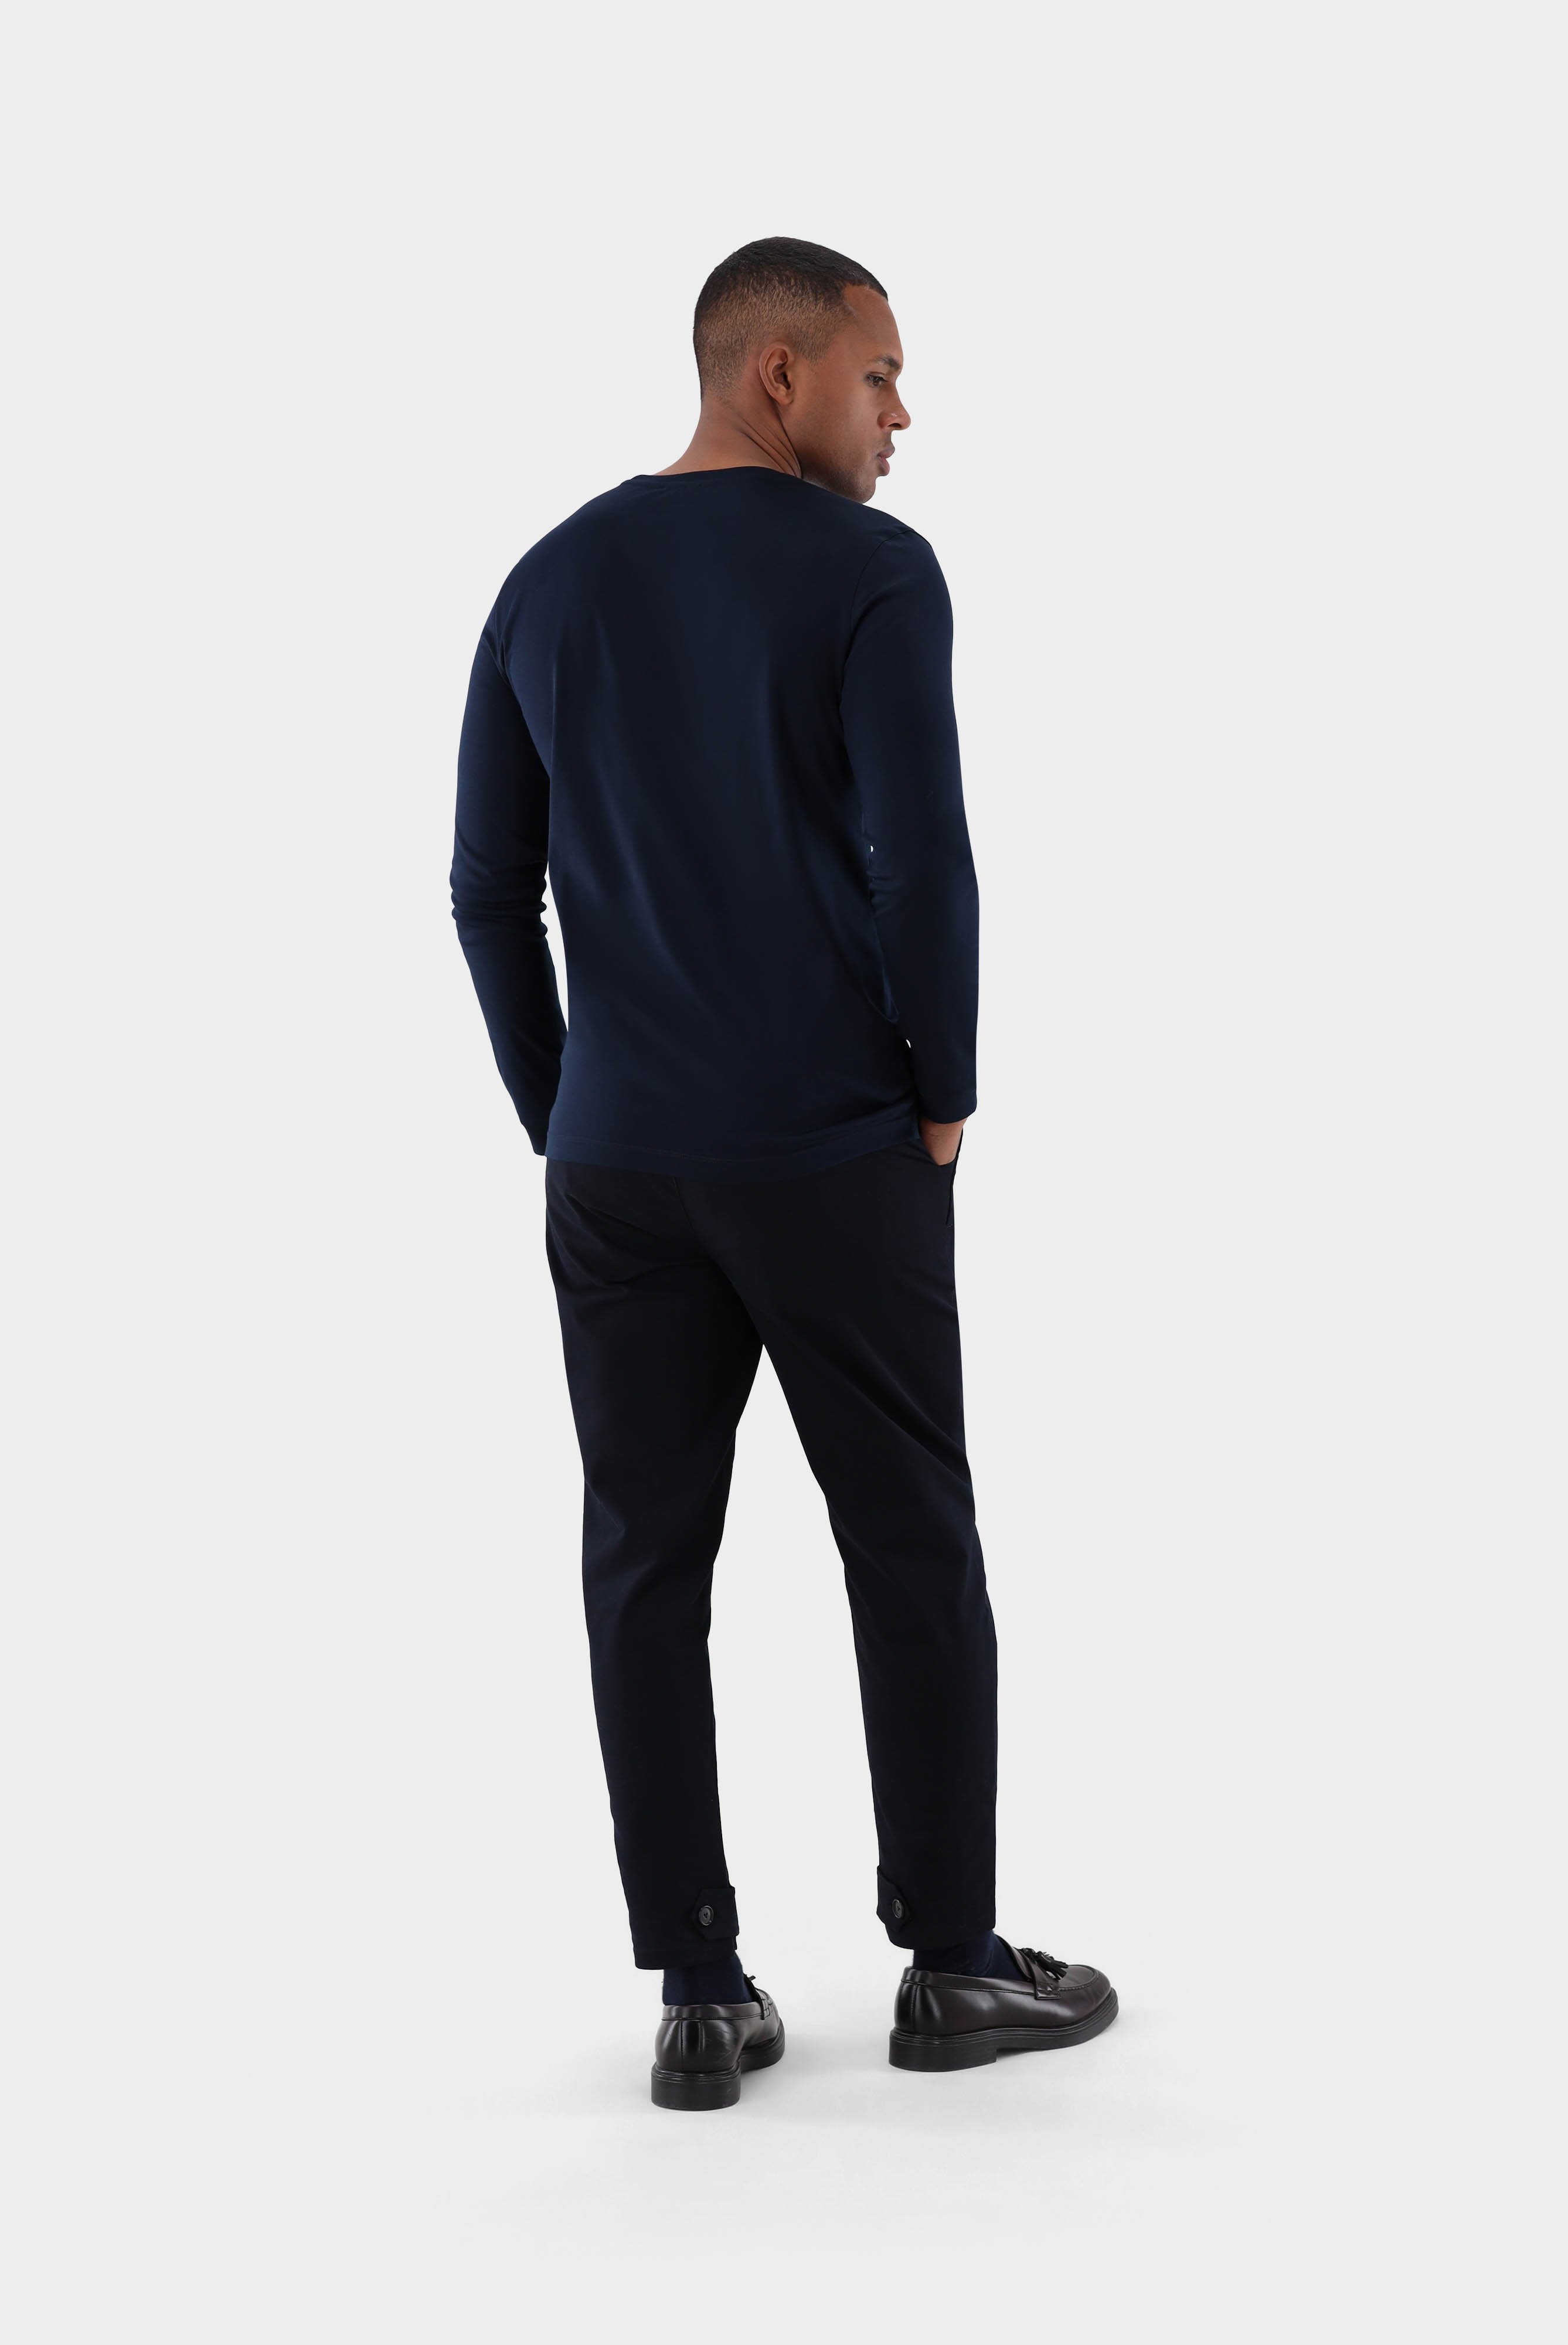 T-Shirts+Langarm Jersey T-Shirt mit Rundhals Slim Fit+20.1718.UX.180031.790.X3L